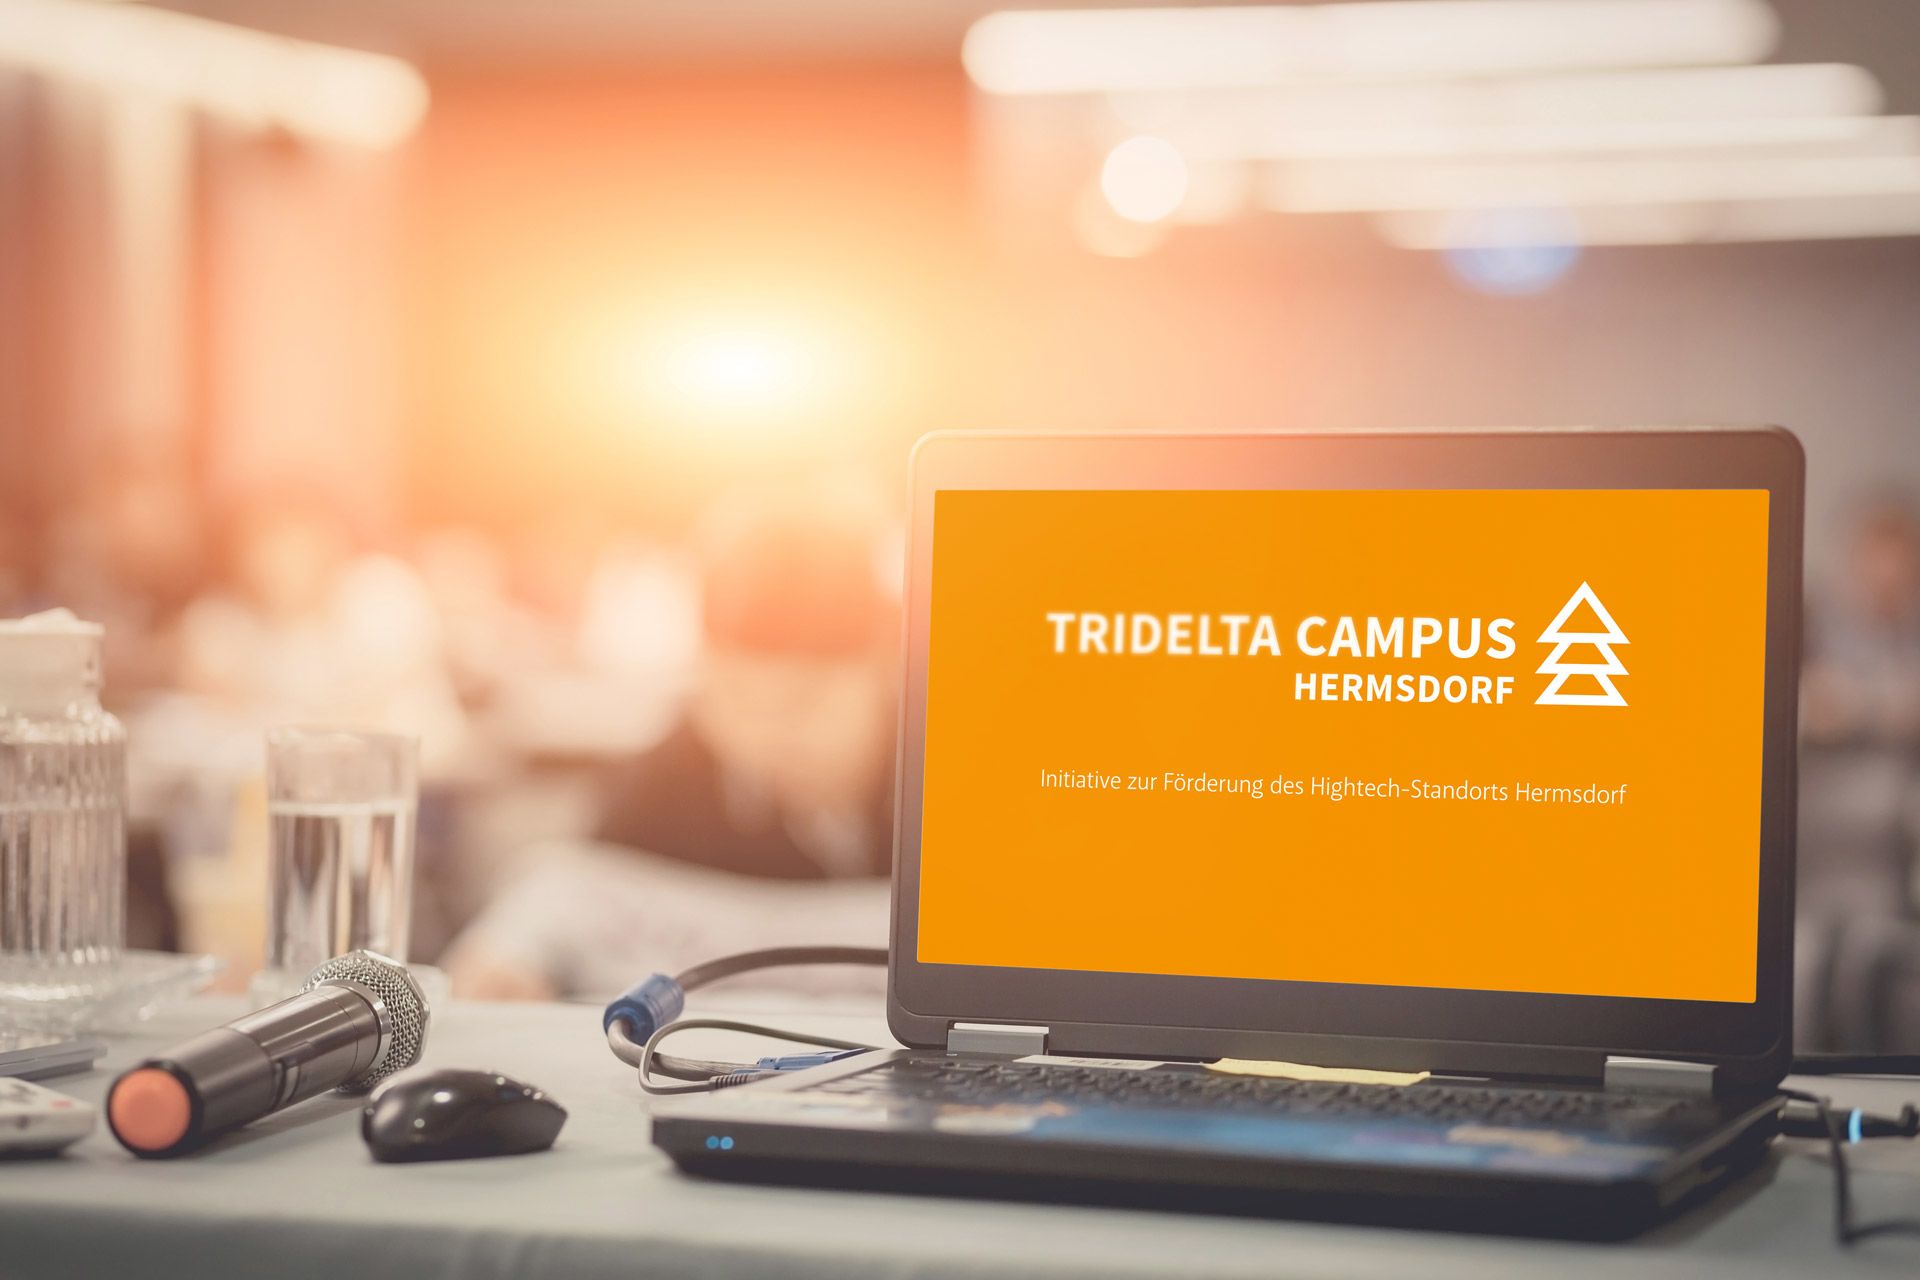 Die Powerpoint-Präsentation des Tridelta Campus Hermsdorf, aufgerufen auf einem Notebook. Im Bild: Die erste Folie mit dem Tridelta-Logo